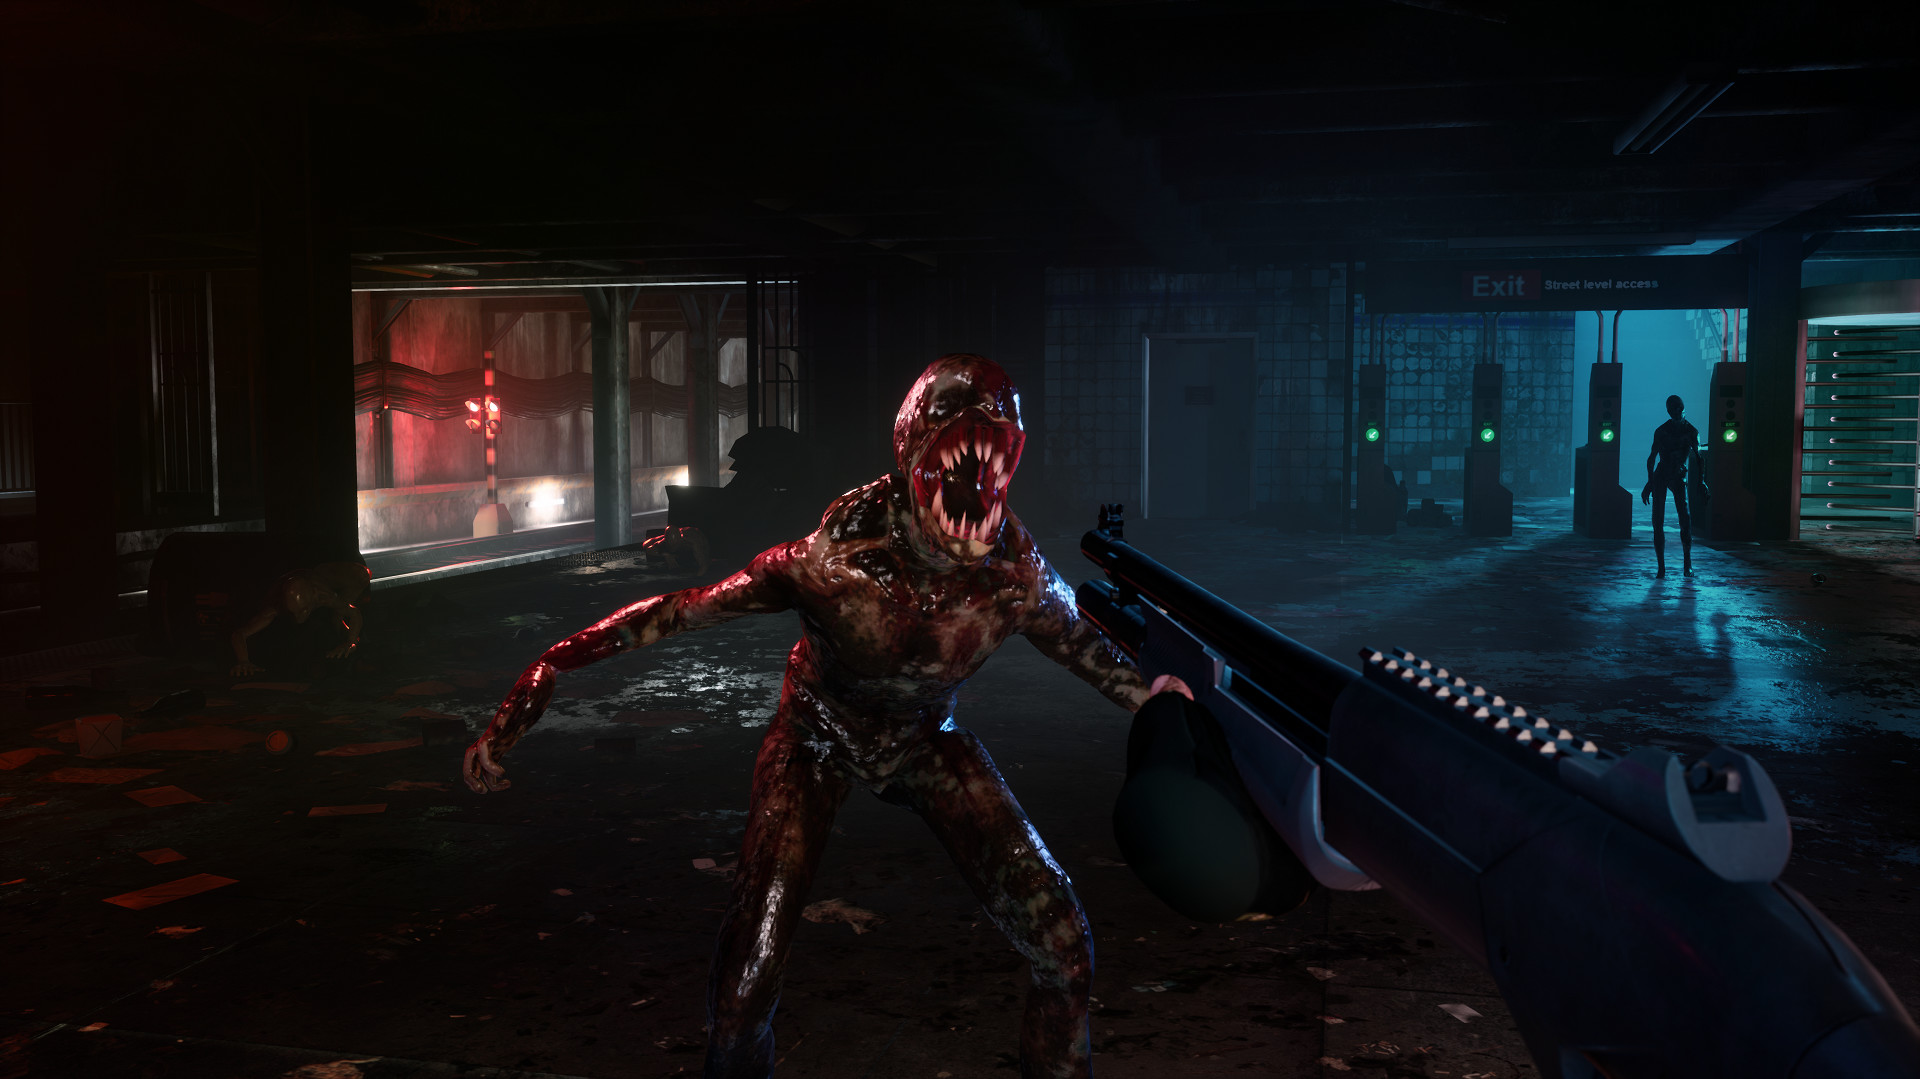 Unreal Engine 5 - crie jogo de FPS do sobrevivência zombies